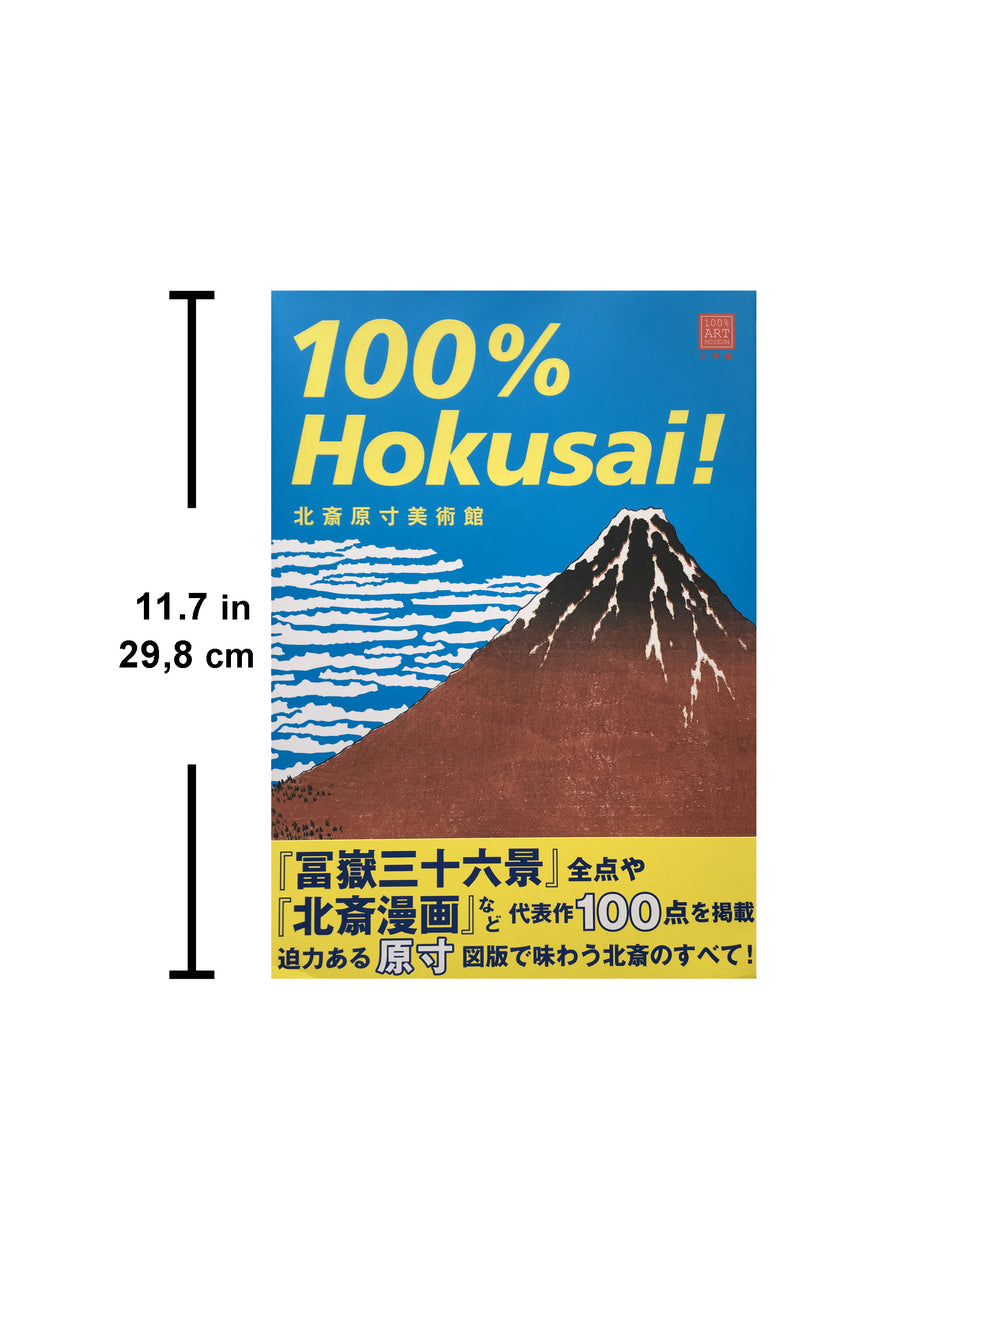 100% Hokusai! (100% ART MUSEUM)